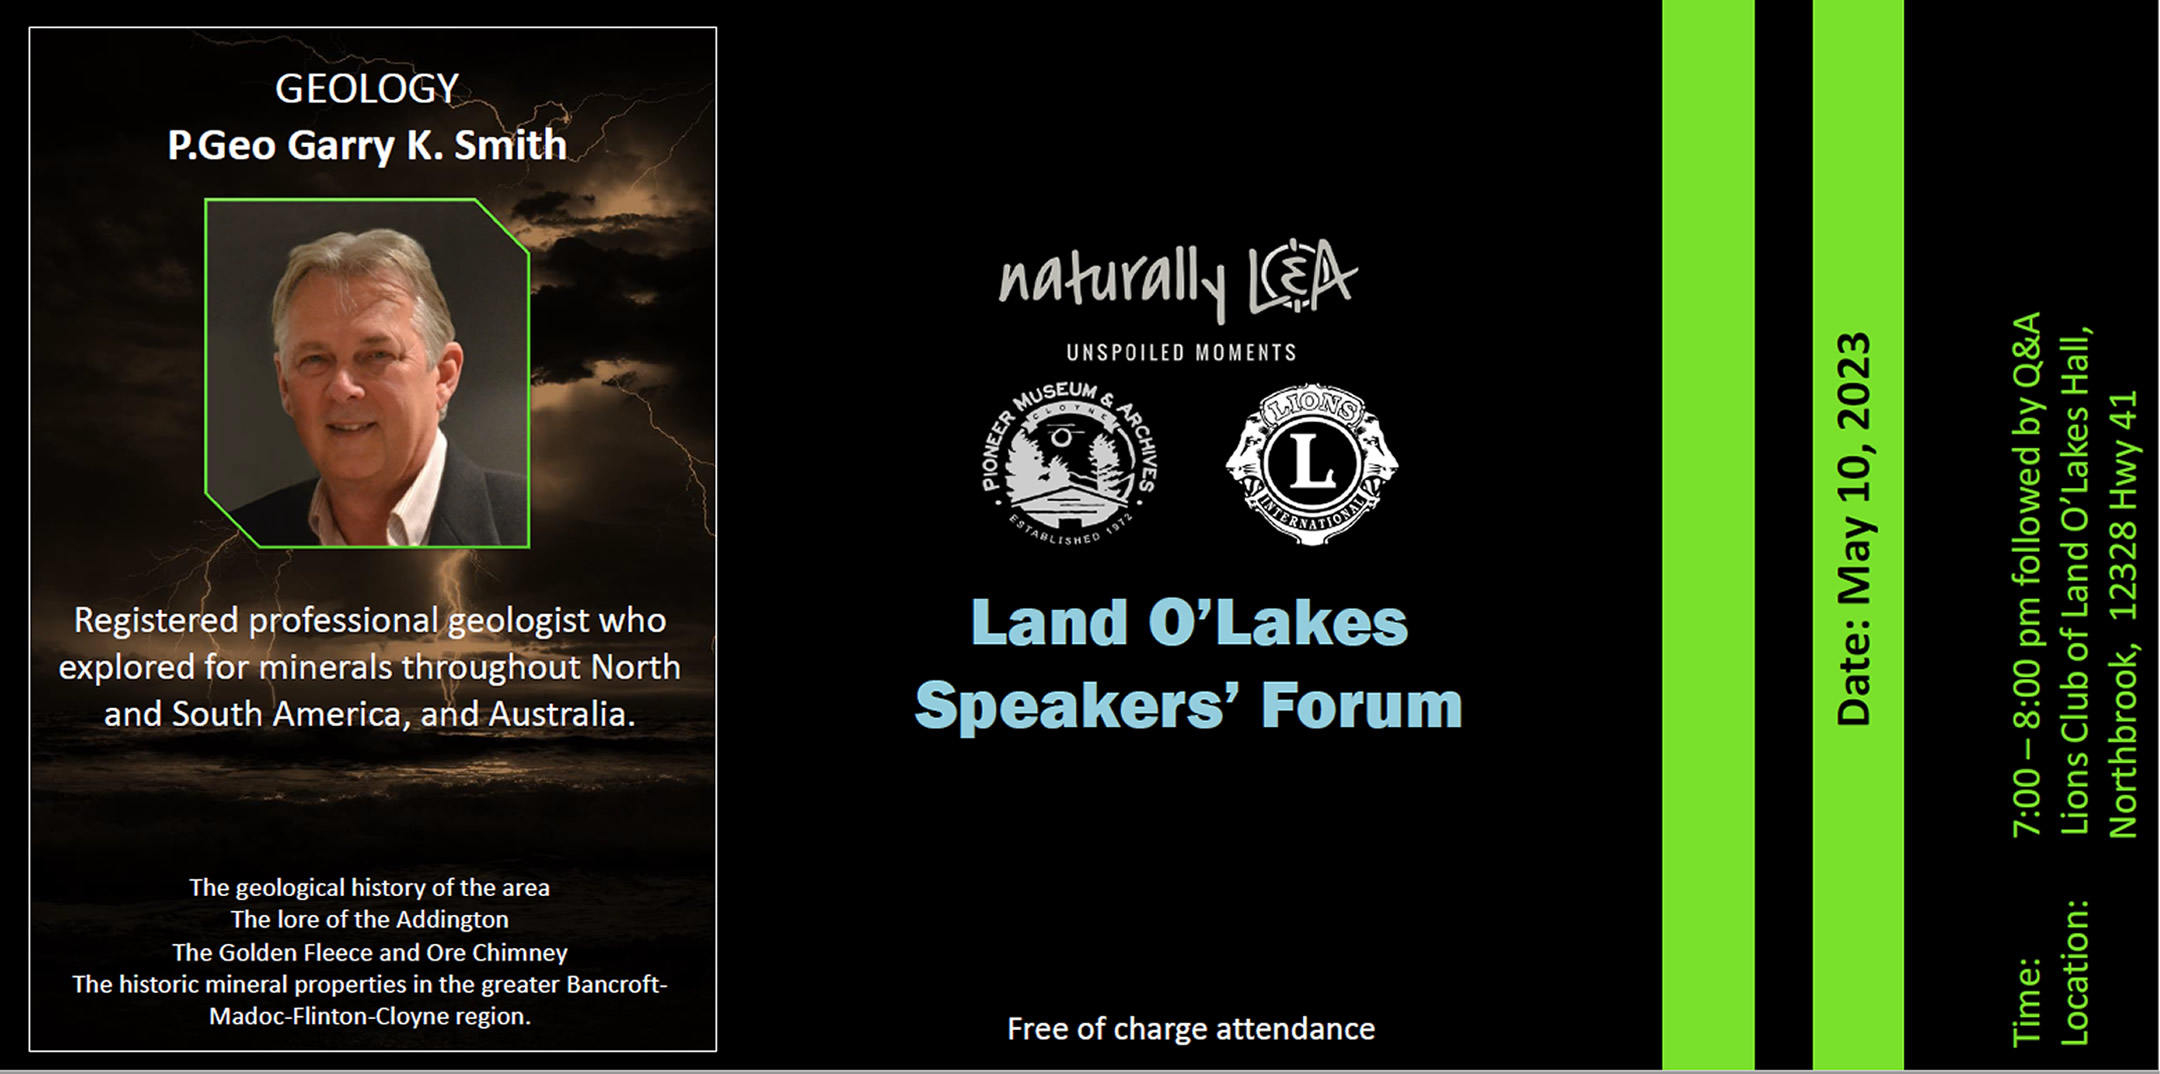 Land O' Lakes Speakers' Forum - Garry Smith